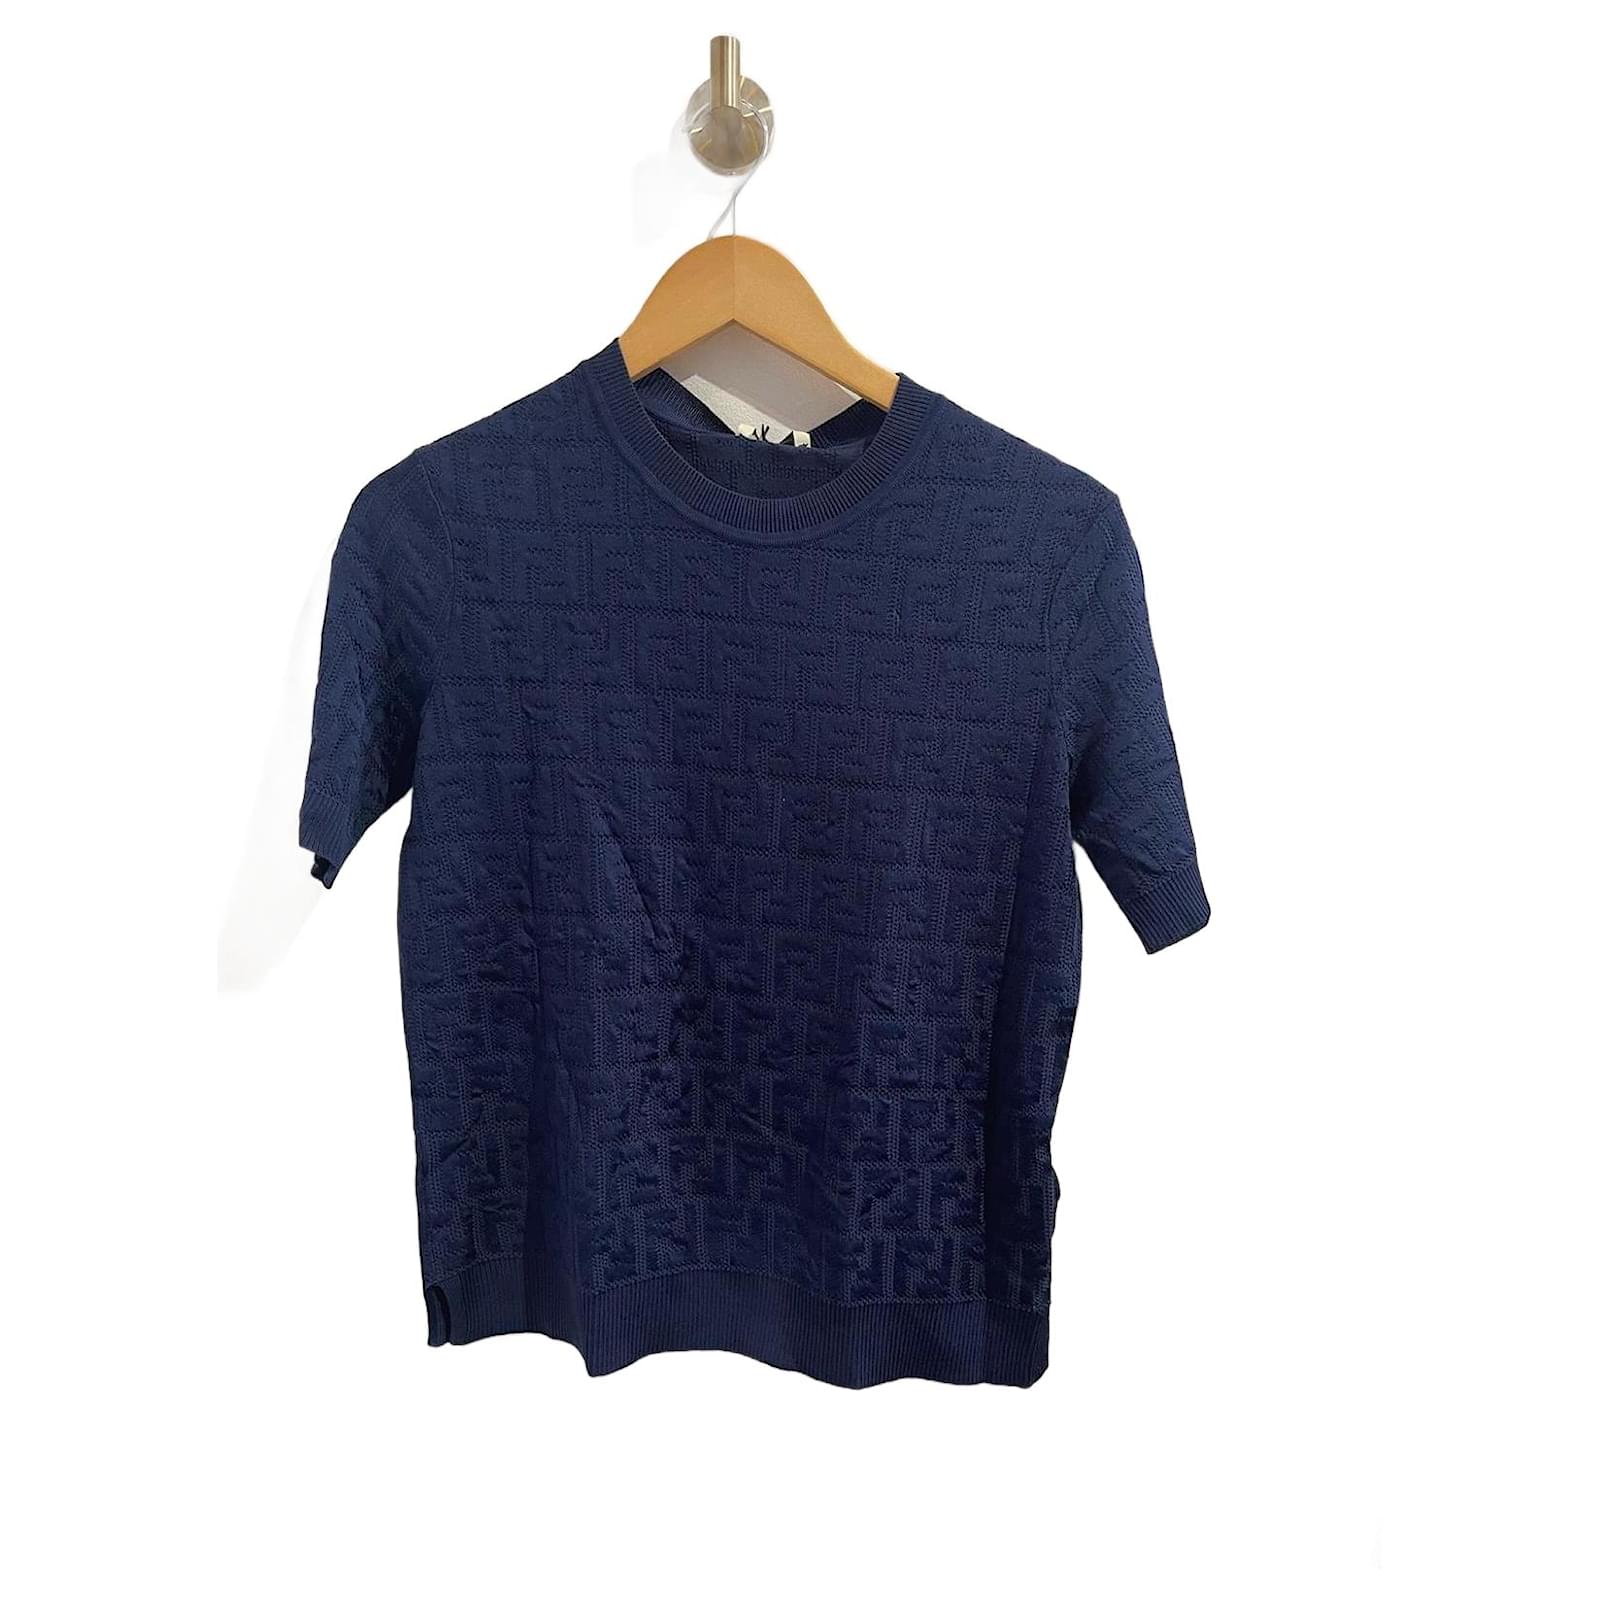 Sweatshirt Louis Vuitton Blue size XL International in Cotton